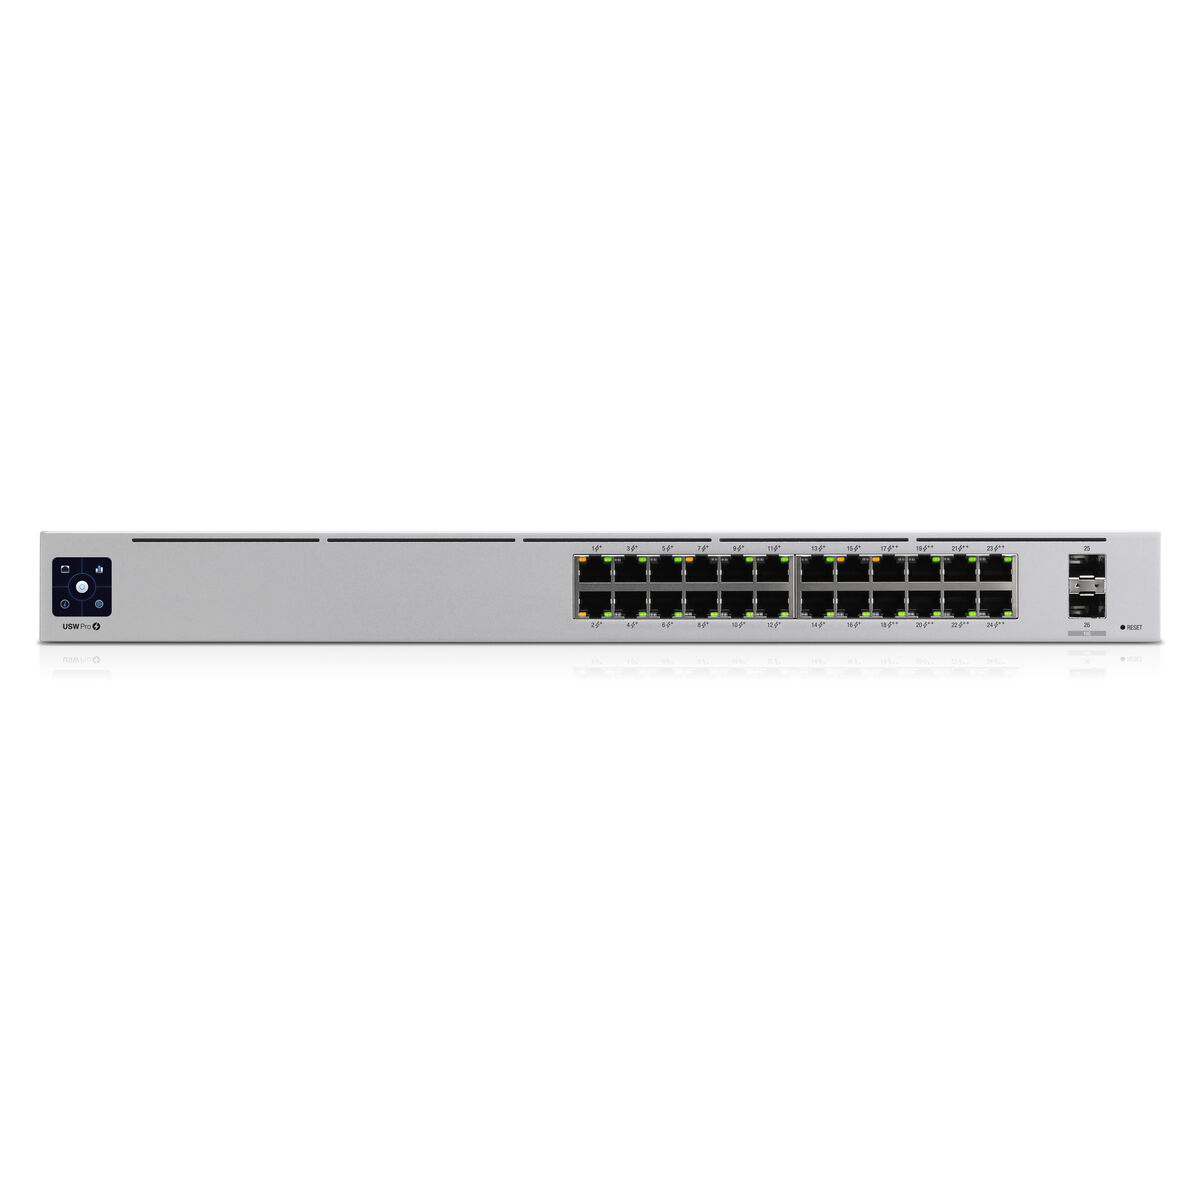 Switch UBIQUITI USW-PRO-24-POE Gigabit Ethernet